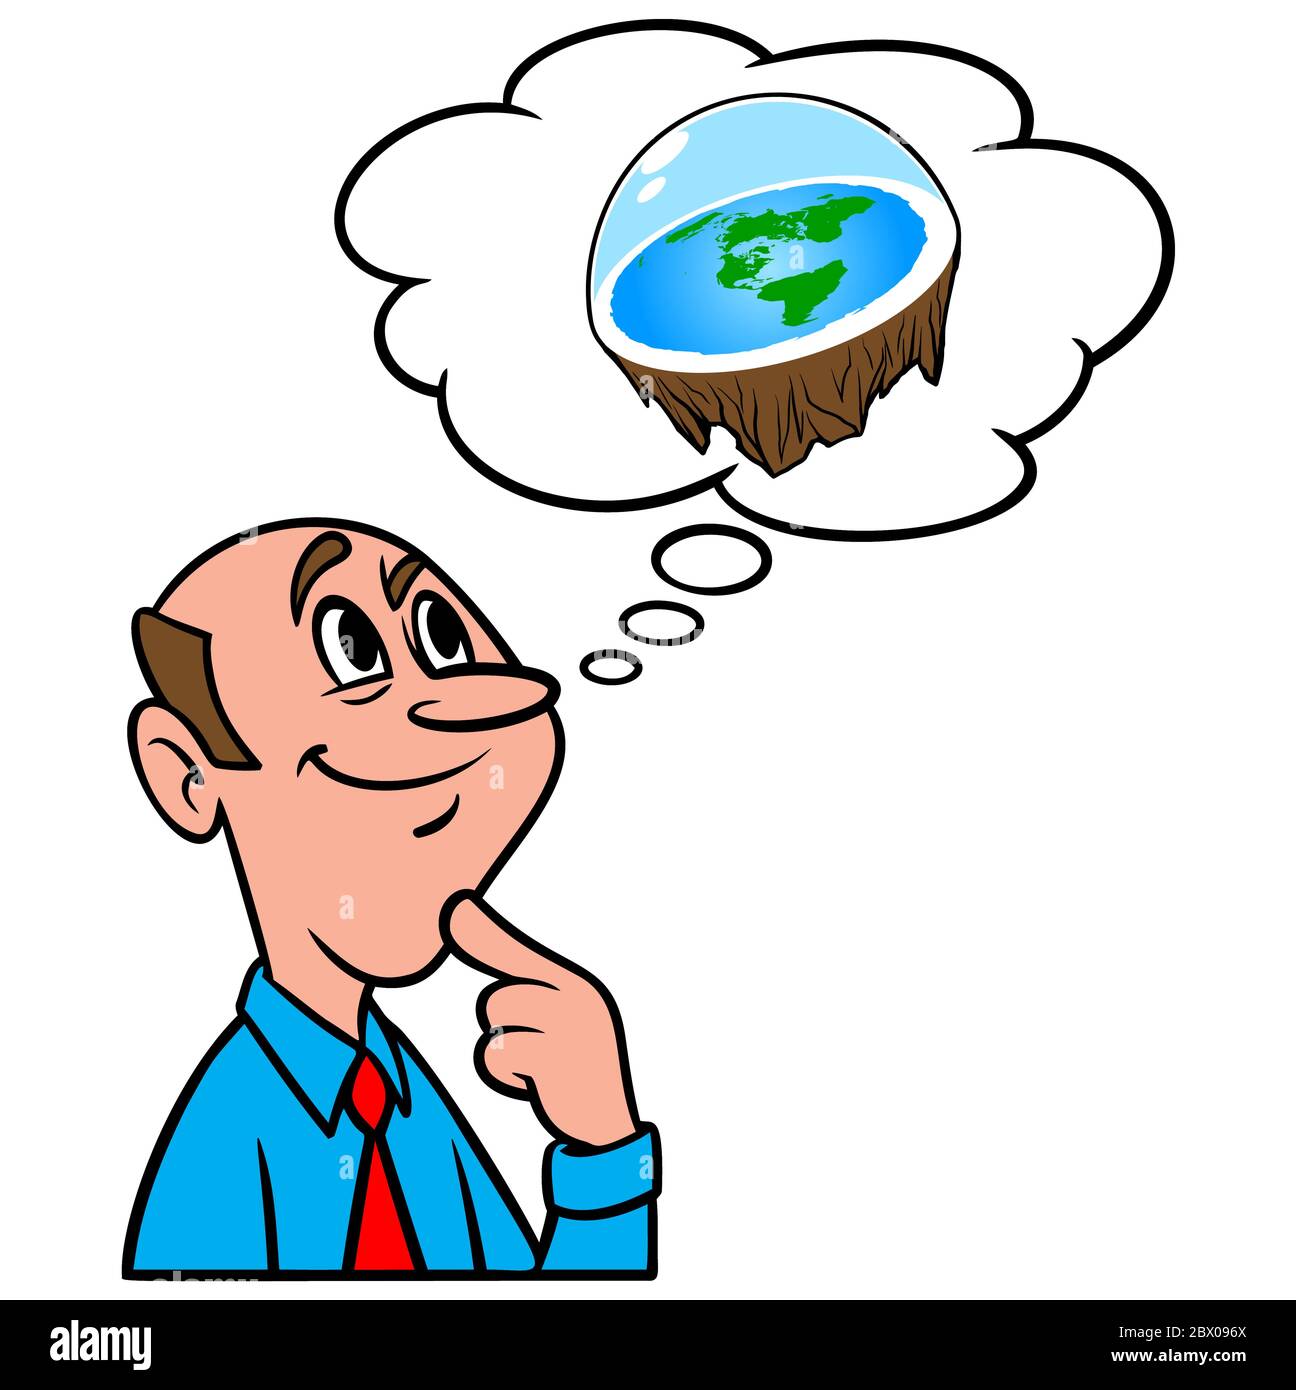 Denken über flache Erde - eine Illustration einer Person Denken über eine flache Erde. Stock Vektor